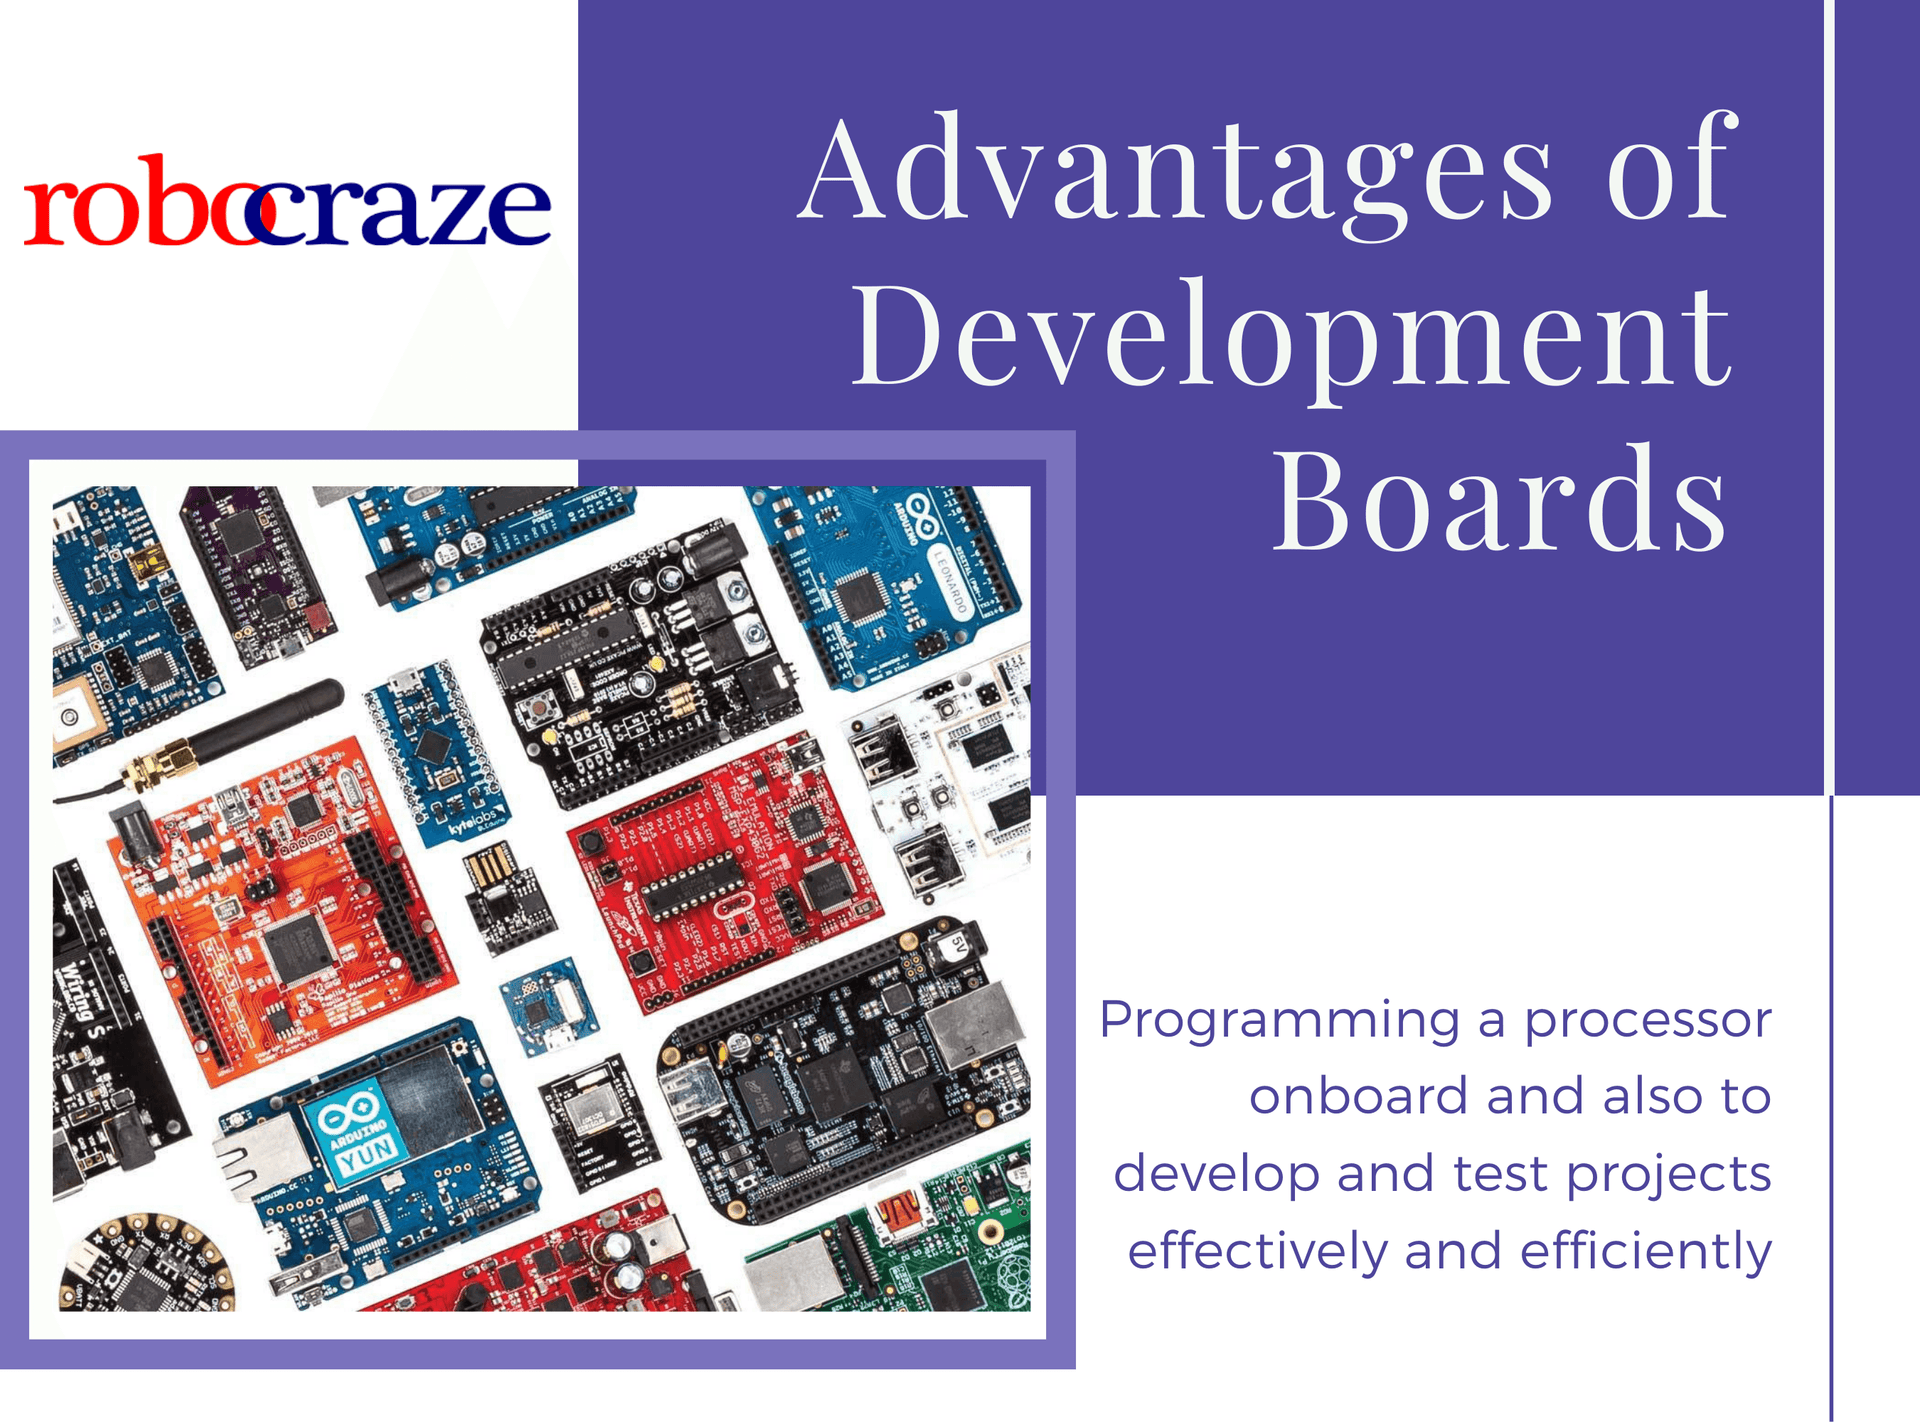 Development Boards